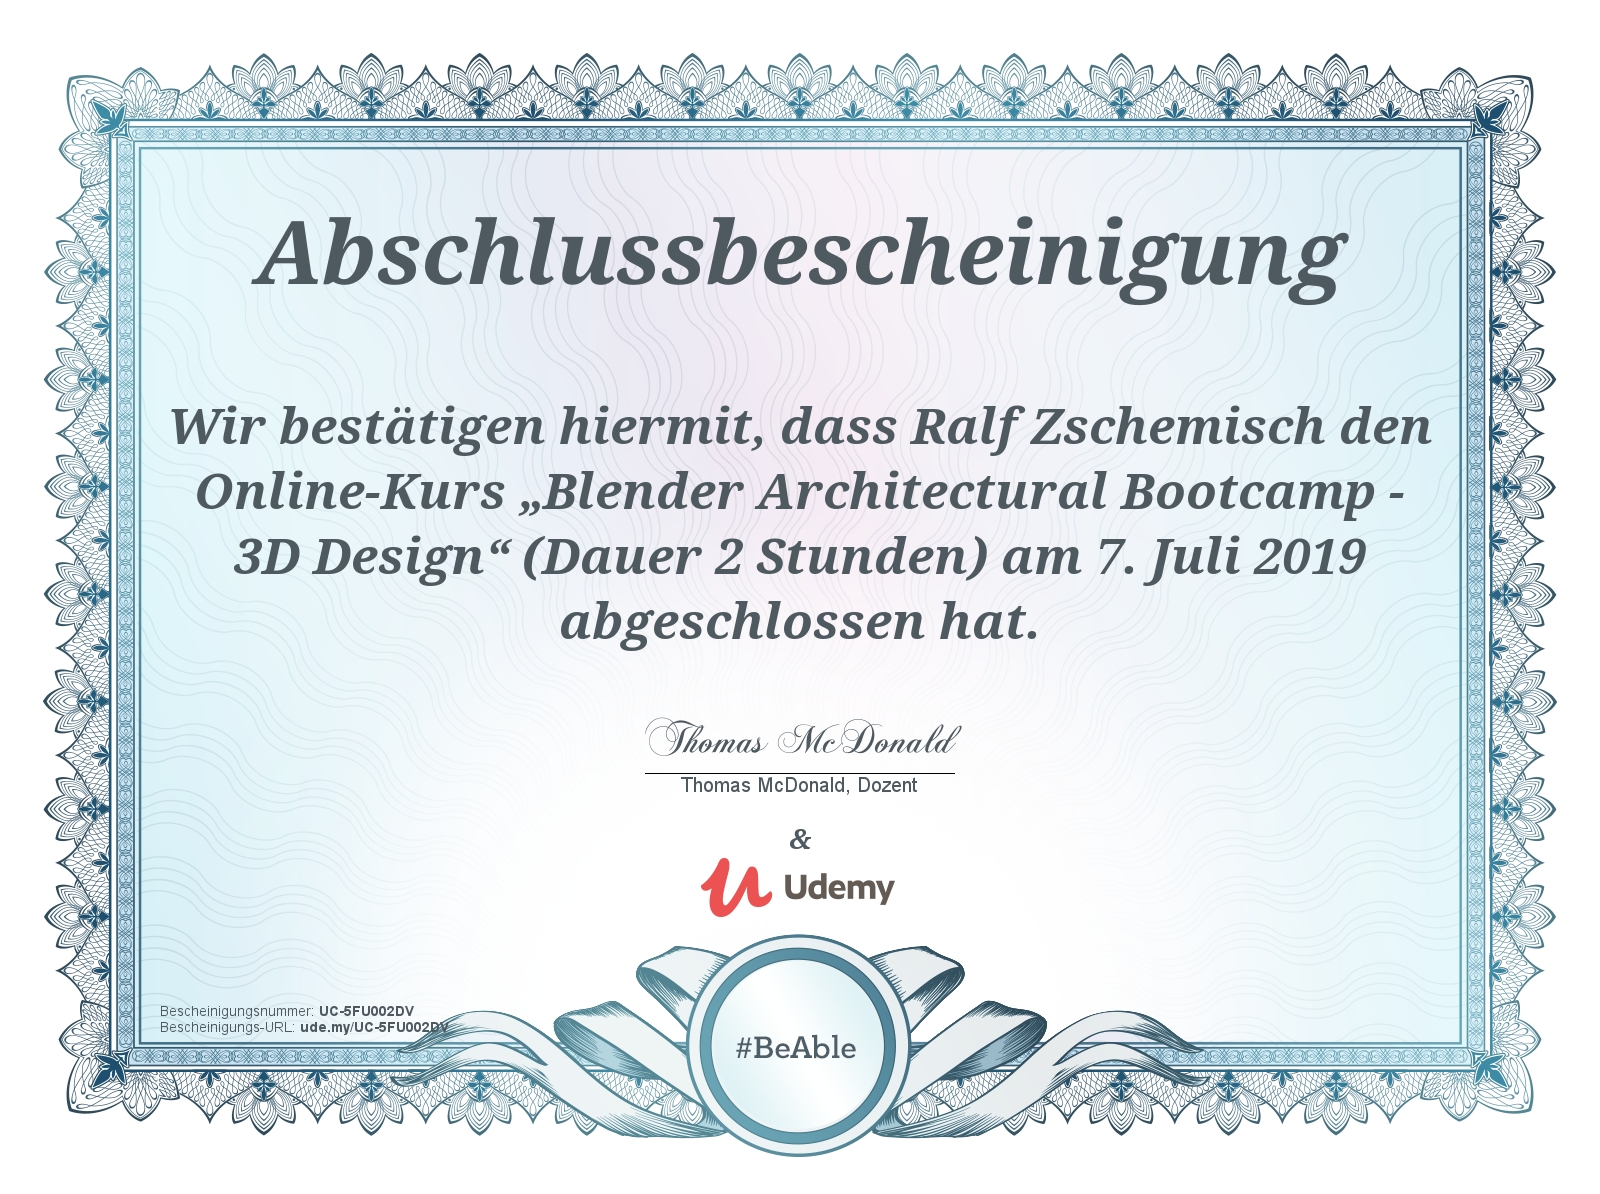 Abschlussbescheinigung: Blender Architectural Bootcamp – 3D Design